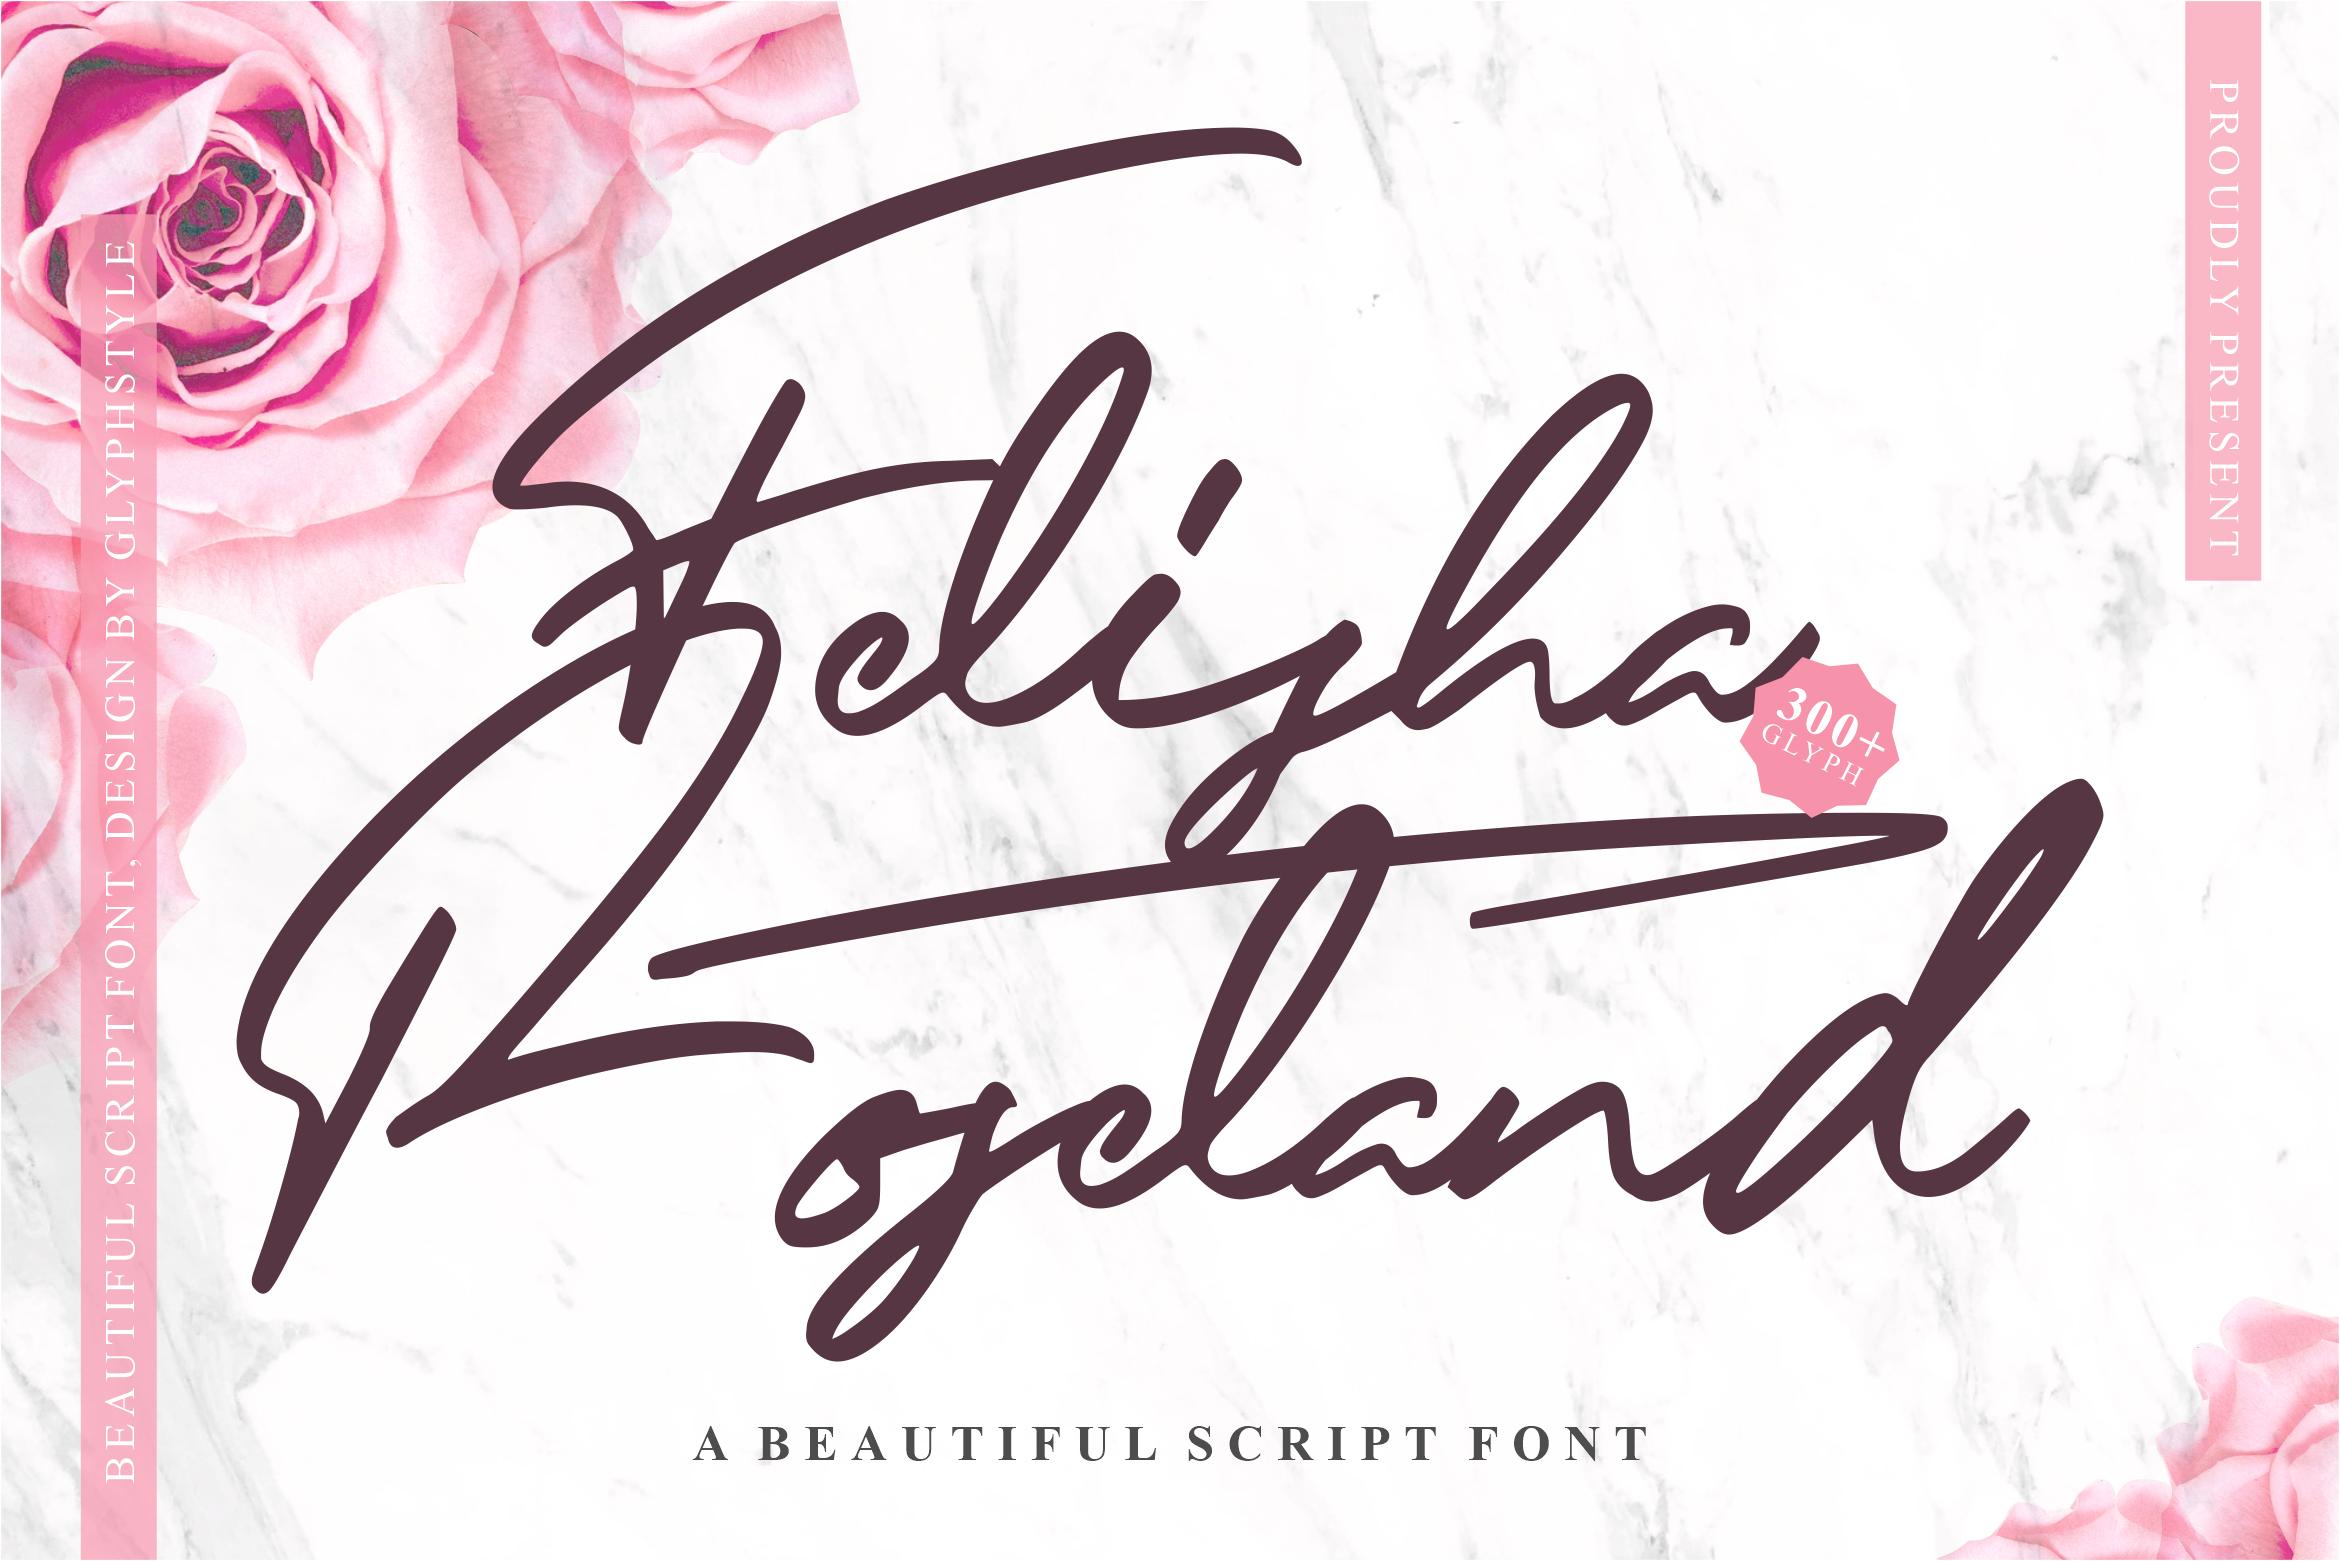 Felisha Roseland Font